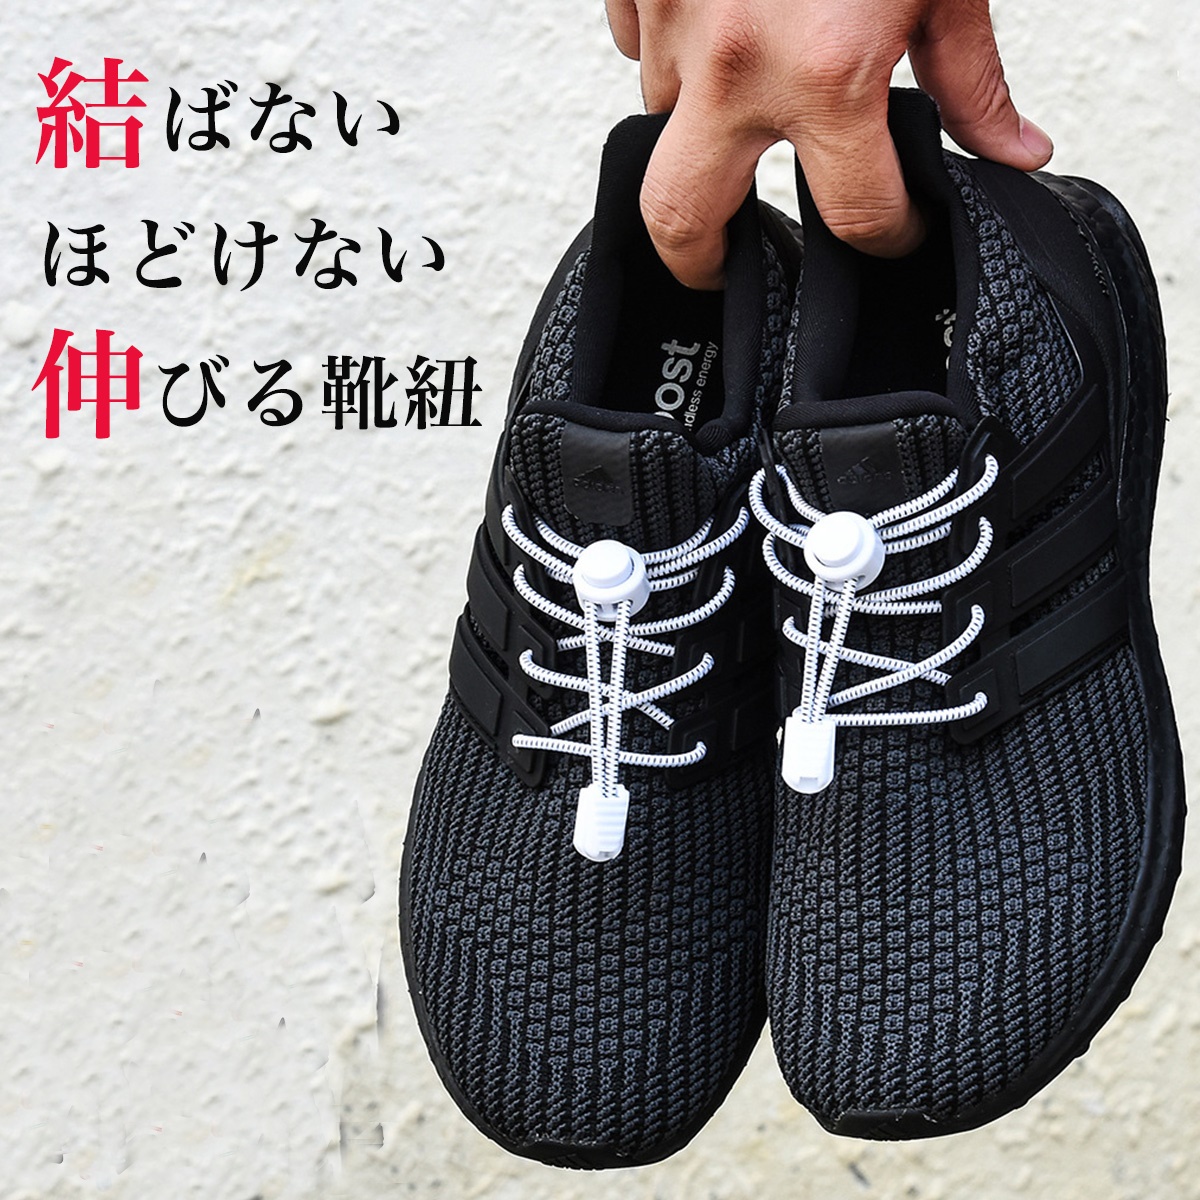 結ばない靴紐：黒 カプセルタイプ ゴム シンプル 子供 シニア レディース